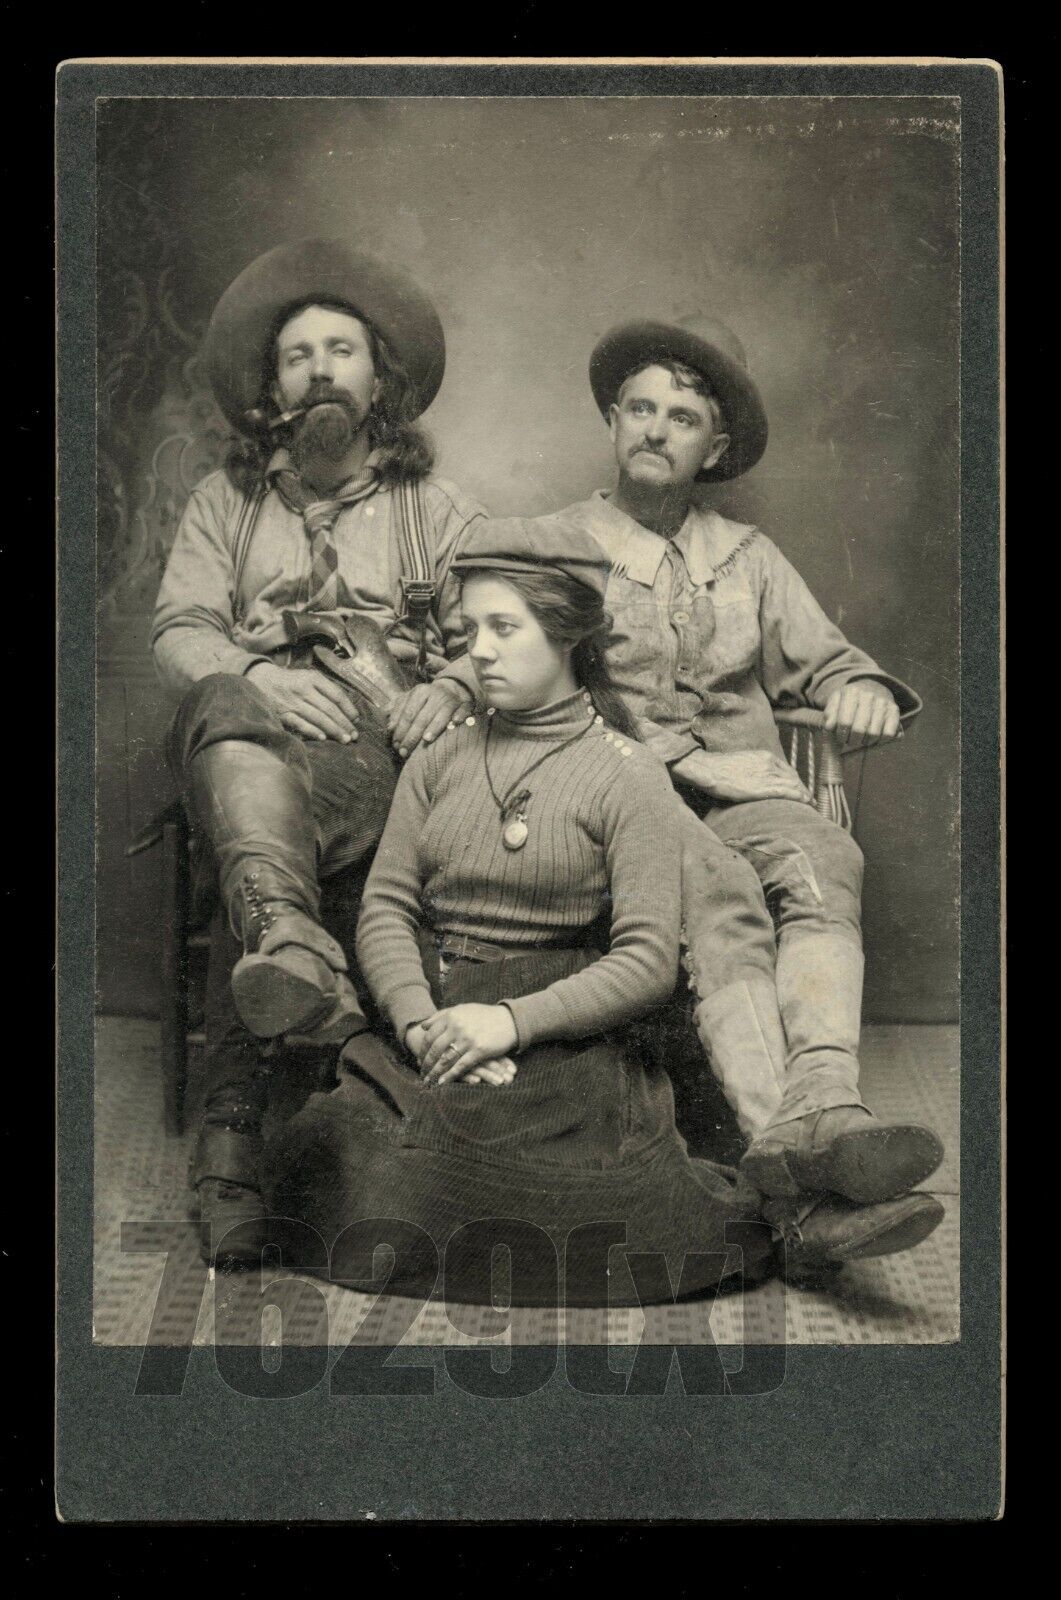 Excellent Pueblo Colorado Group Western Ranchers / Cowboys, Armed, 1890s Photo